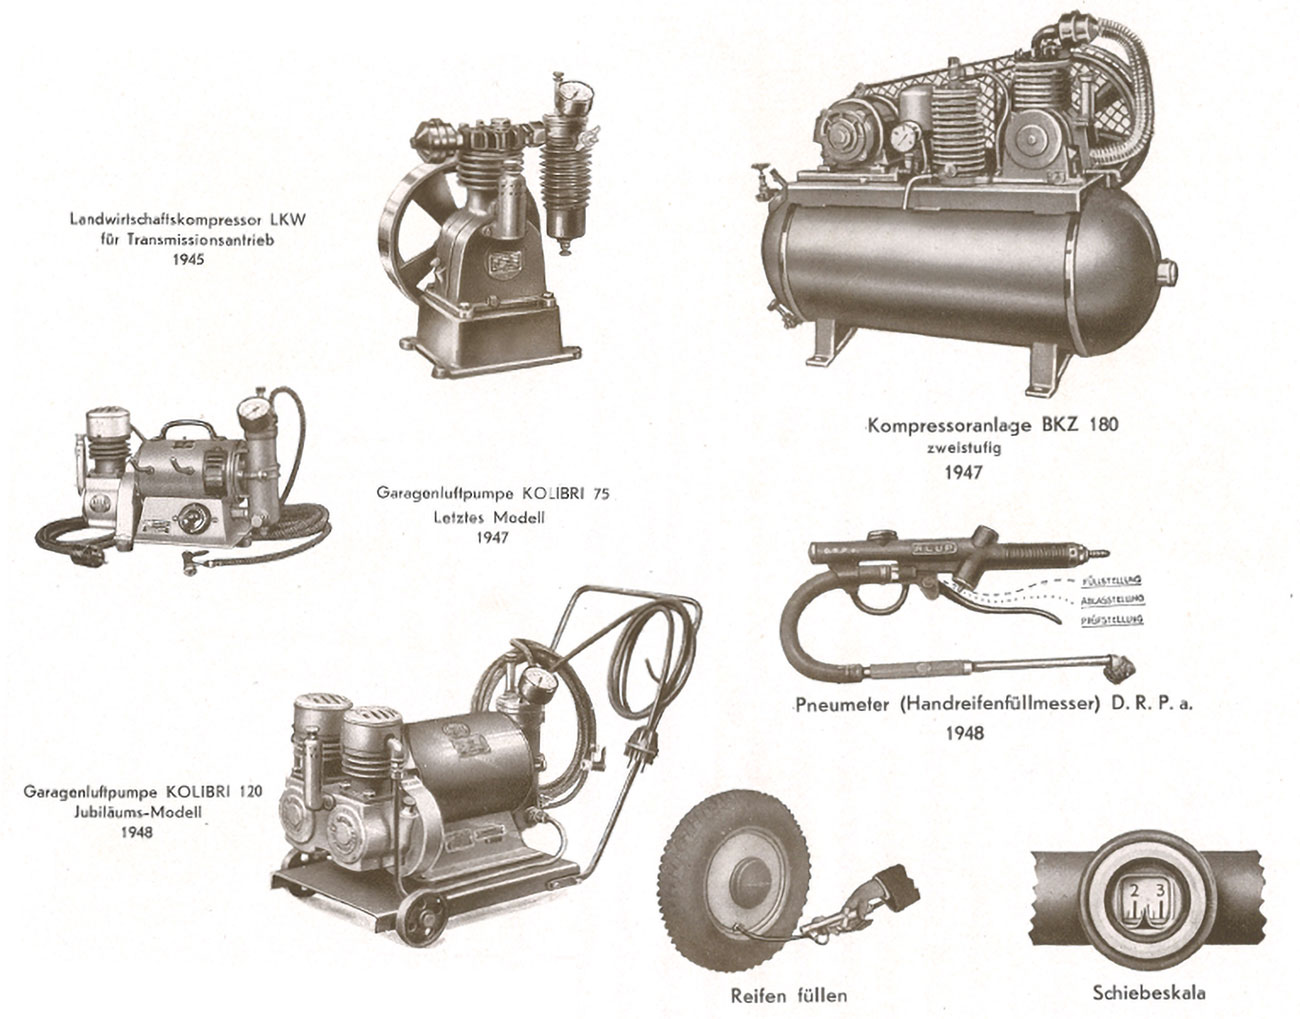 Durckluftwerkzeuge und Kompressoren von Adolf Ehmann aus den 1940er Jahren